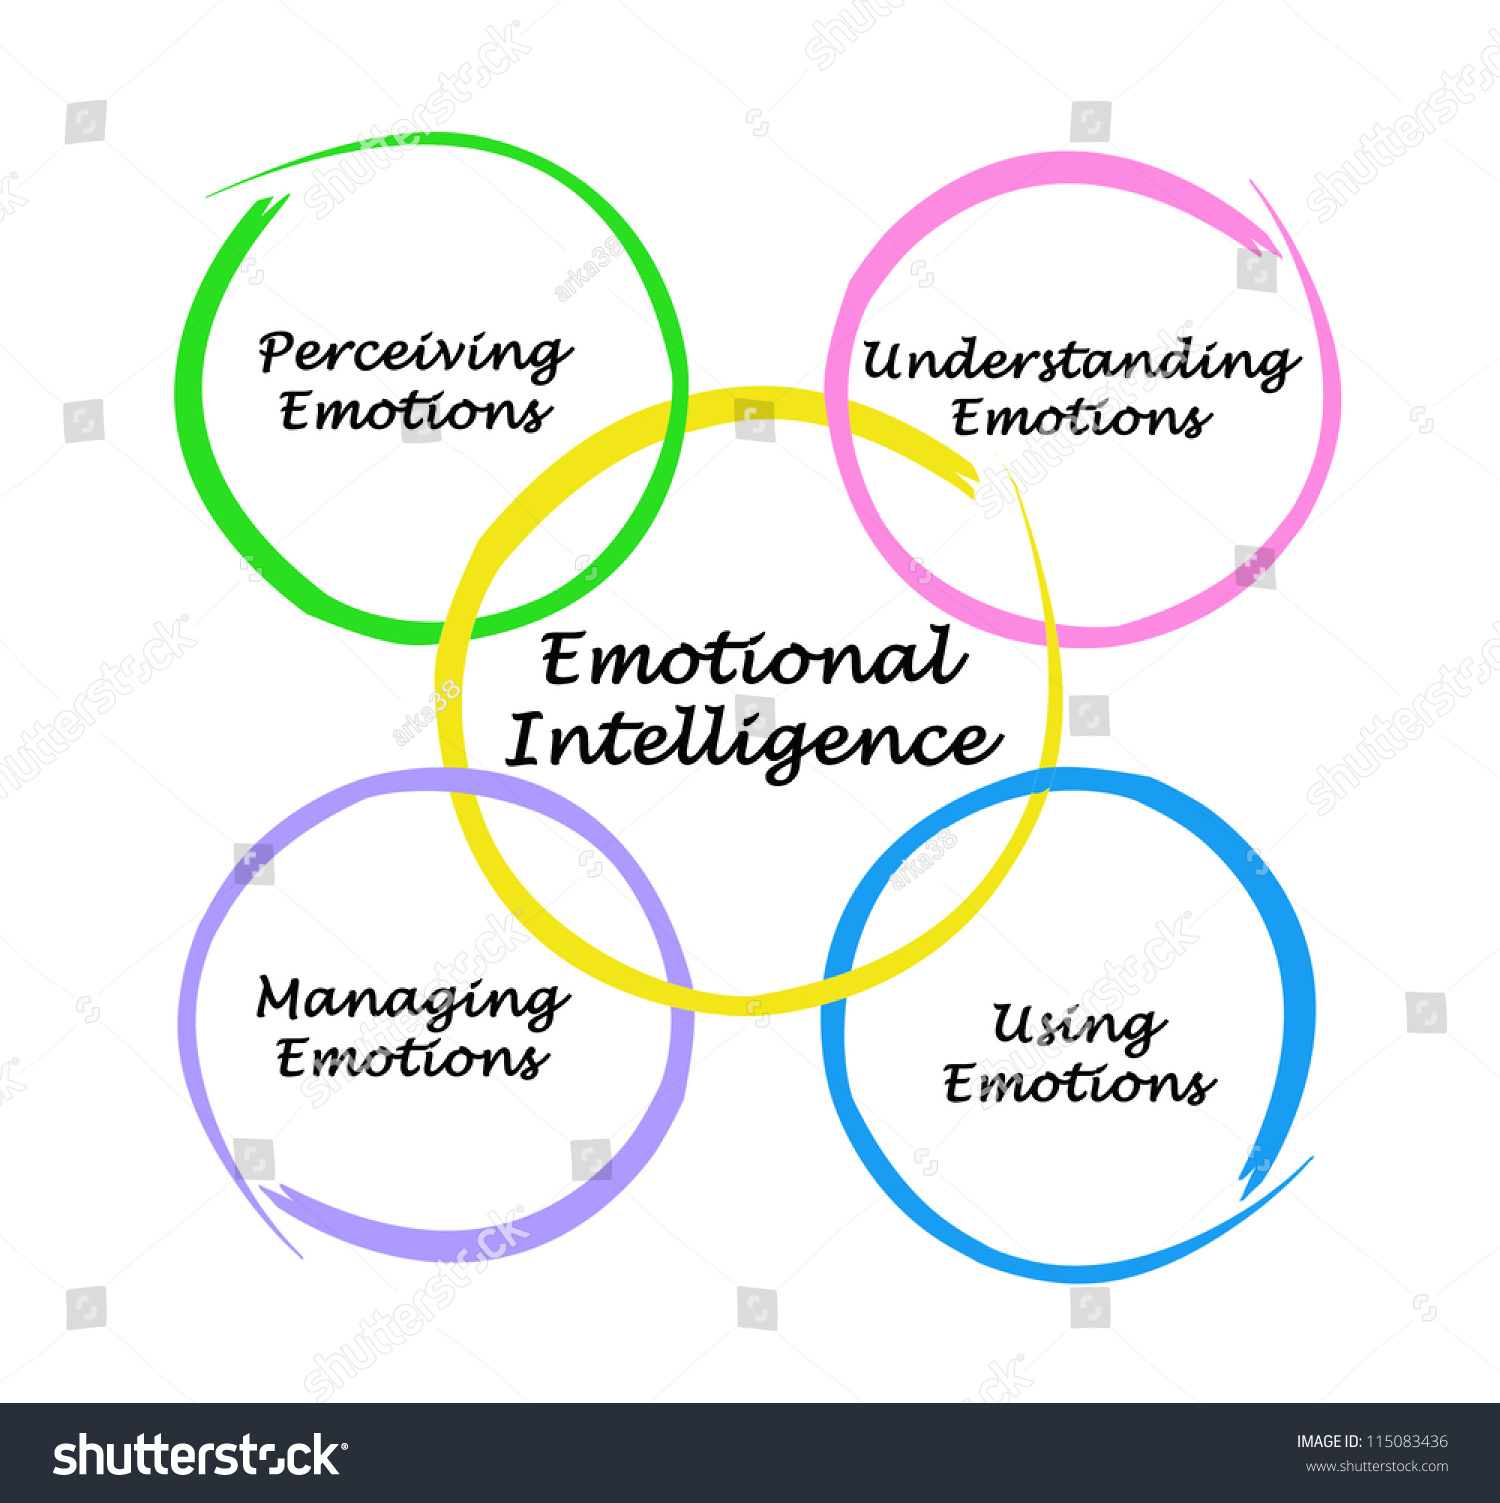 Diagram Emotional Intelligence Stock Illustration